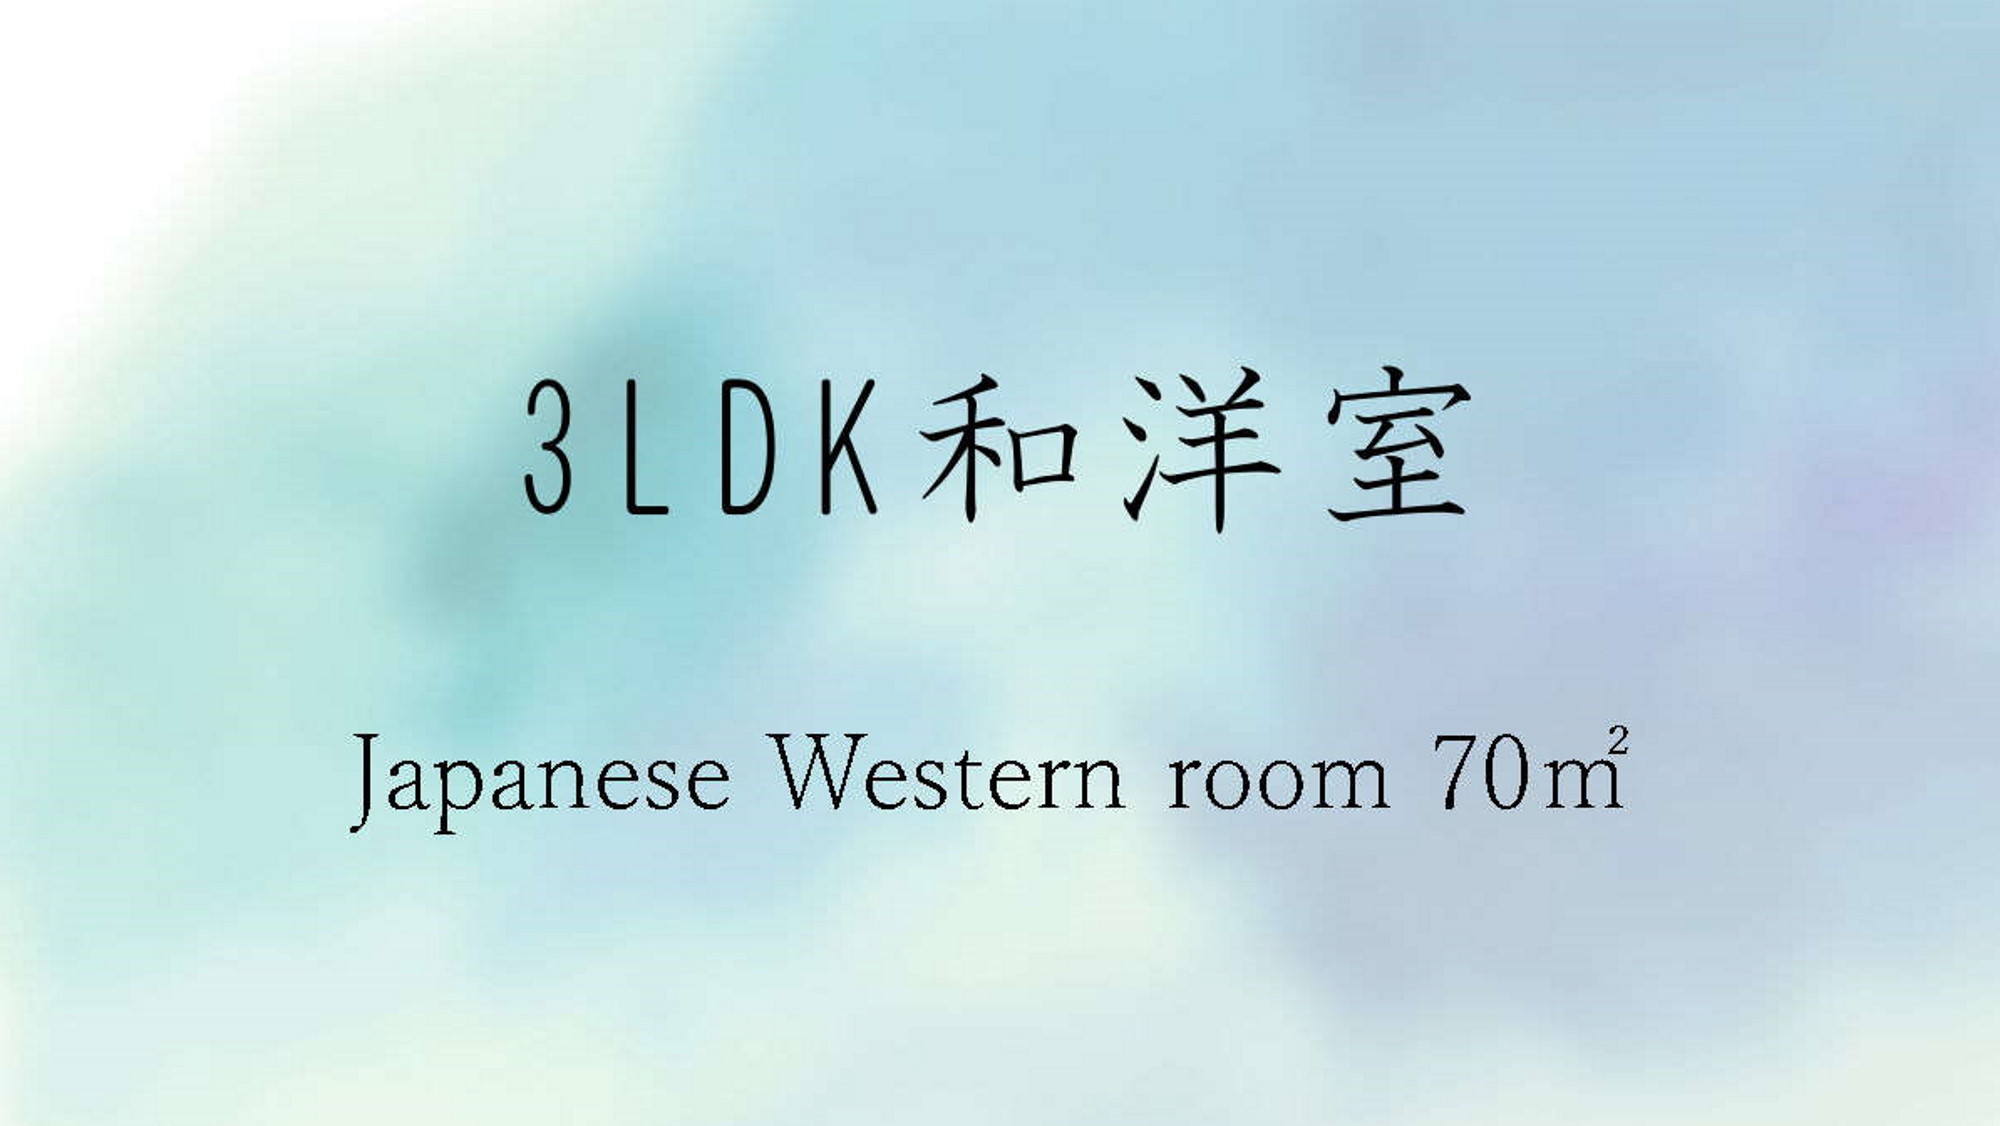 「3LDK 和洋室」全室キッチン付広々客室でのんびりゆったり。お子さまとかくれんぼも！